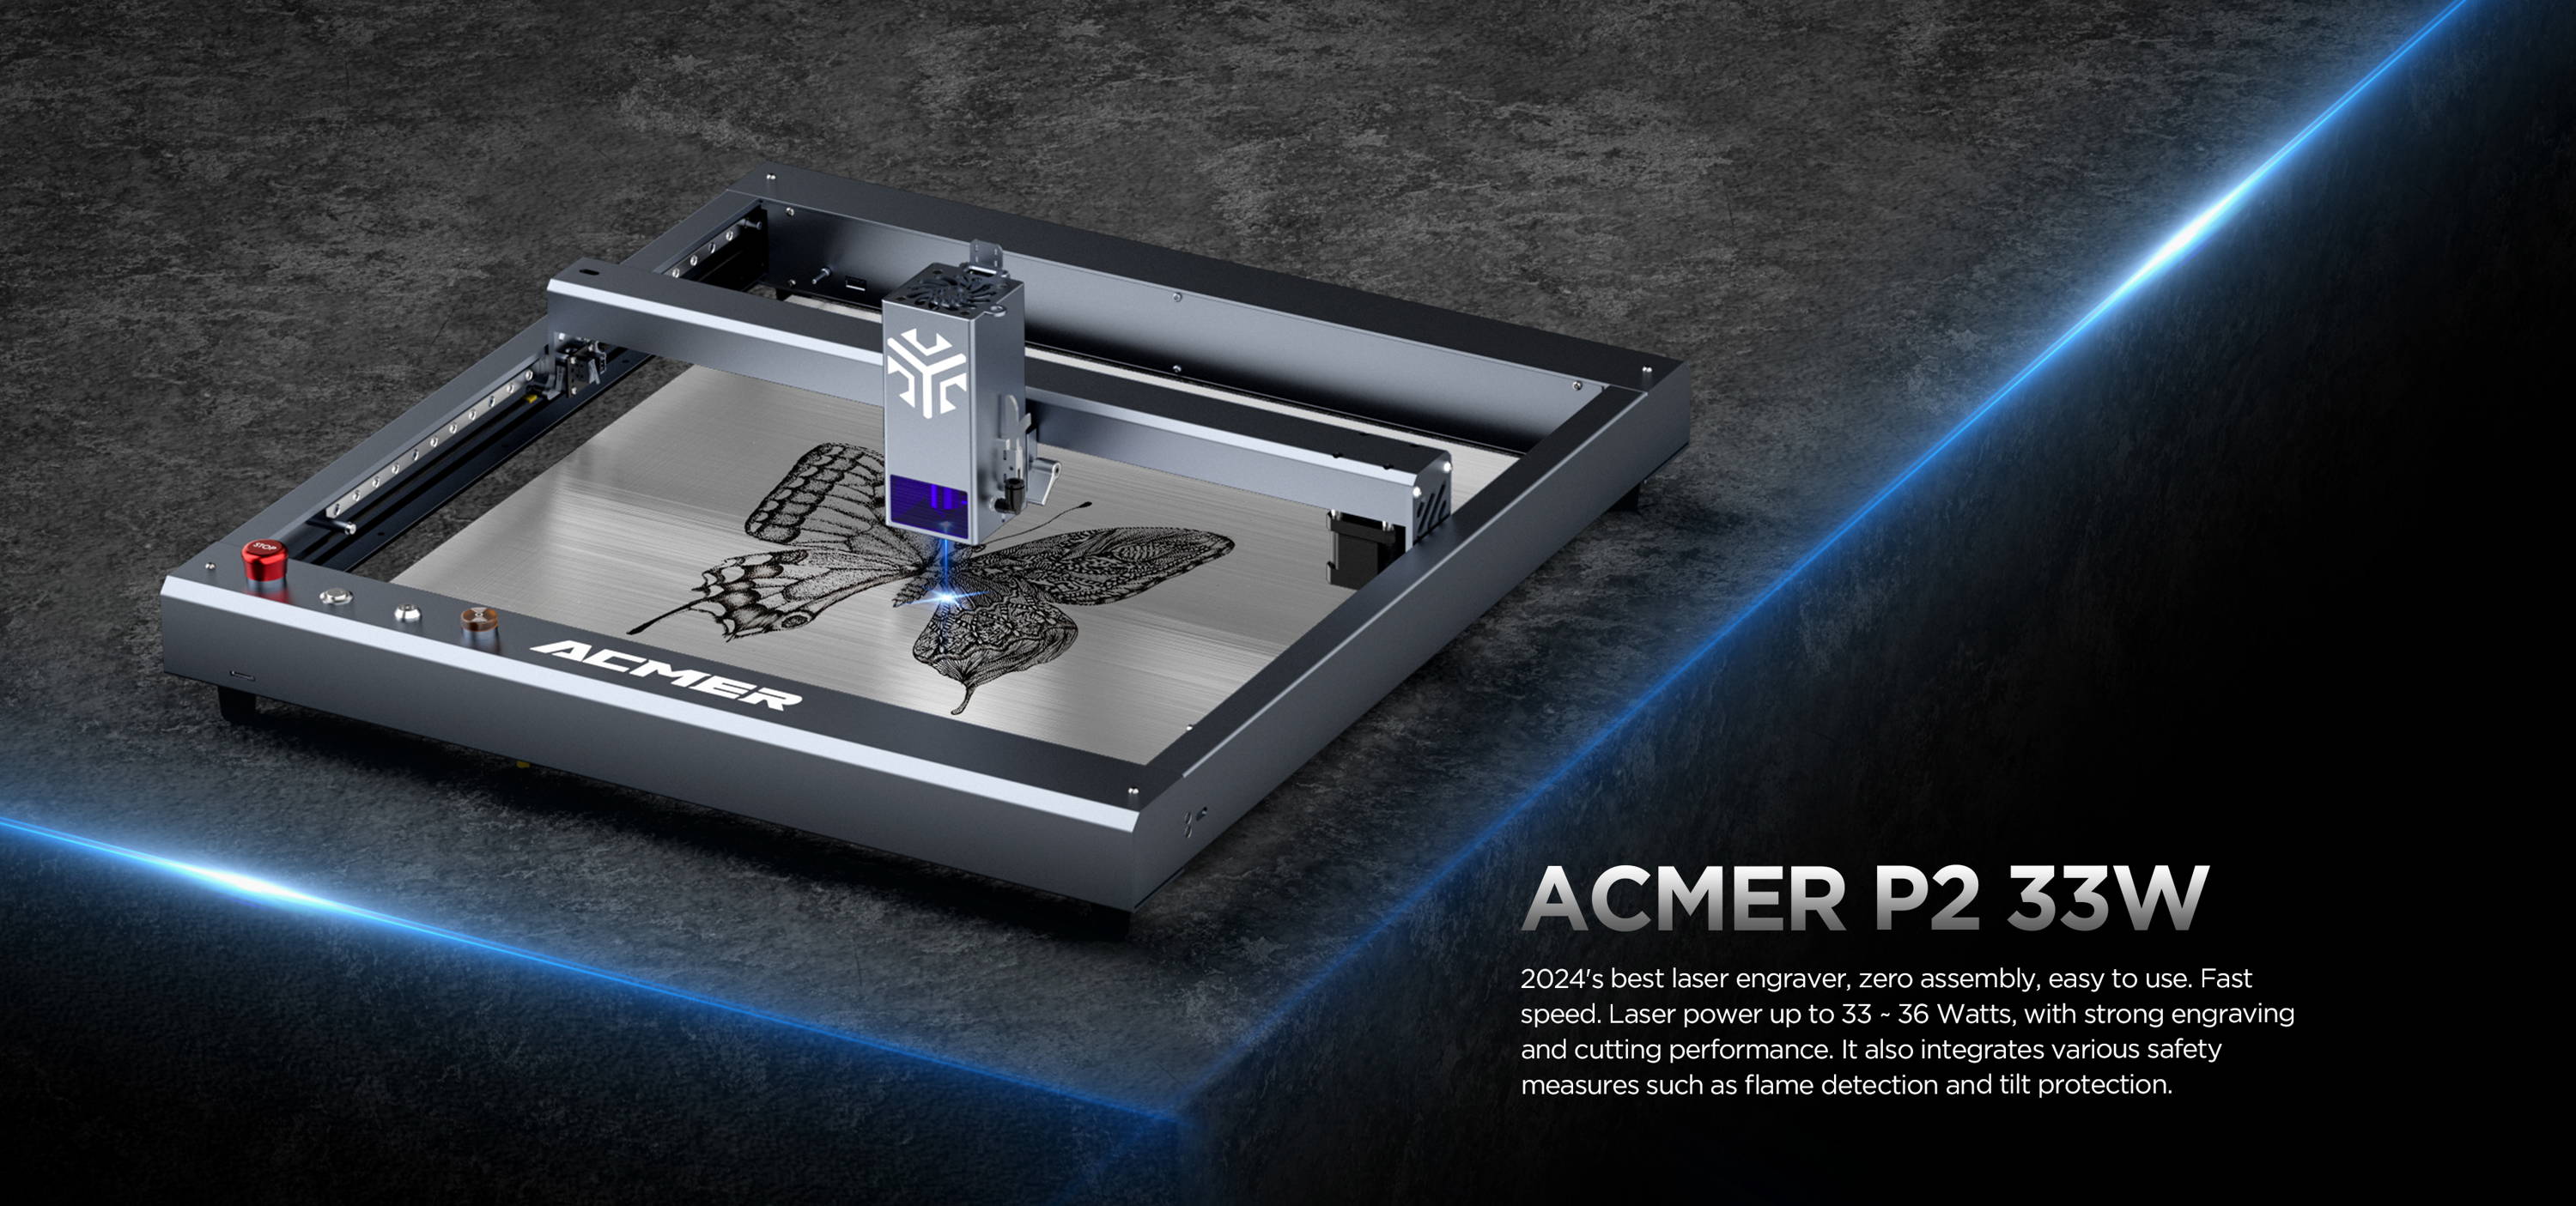 5 Best Laser Engraver & Cutter for Metal in 2023